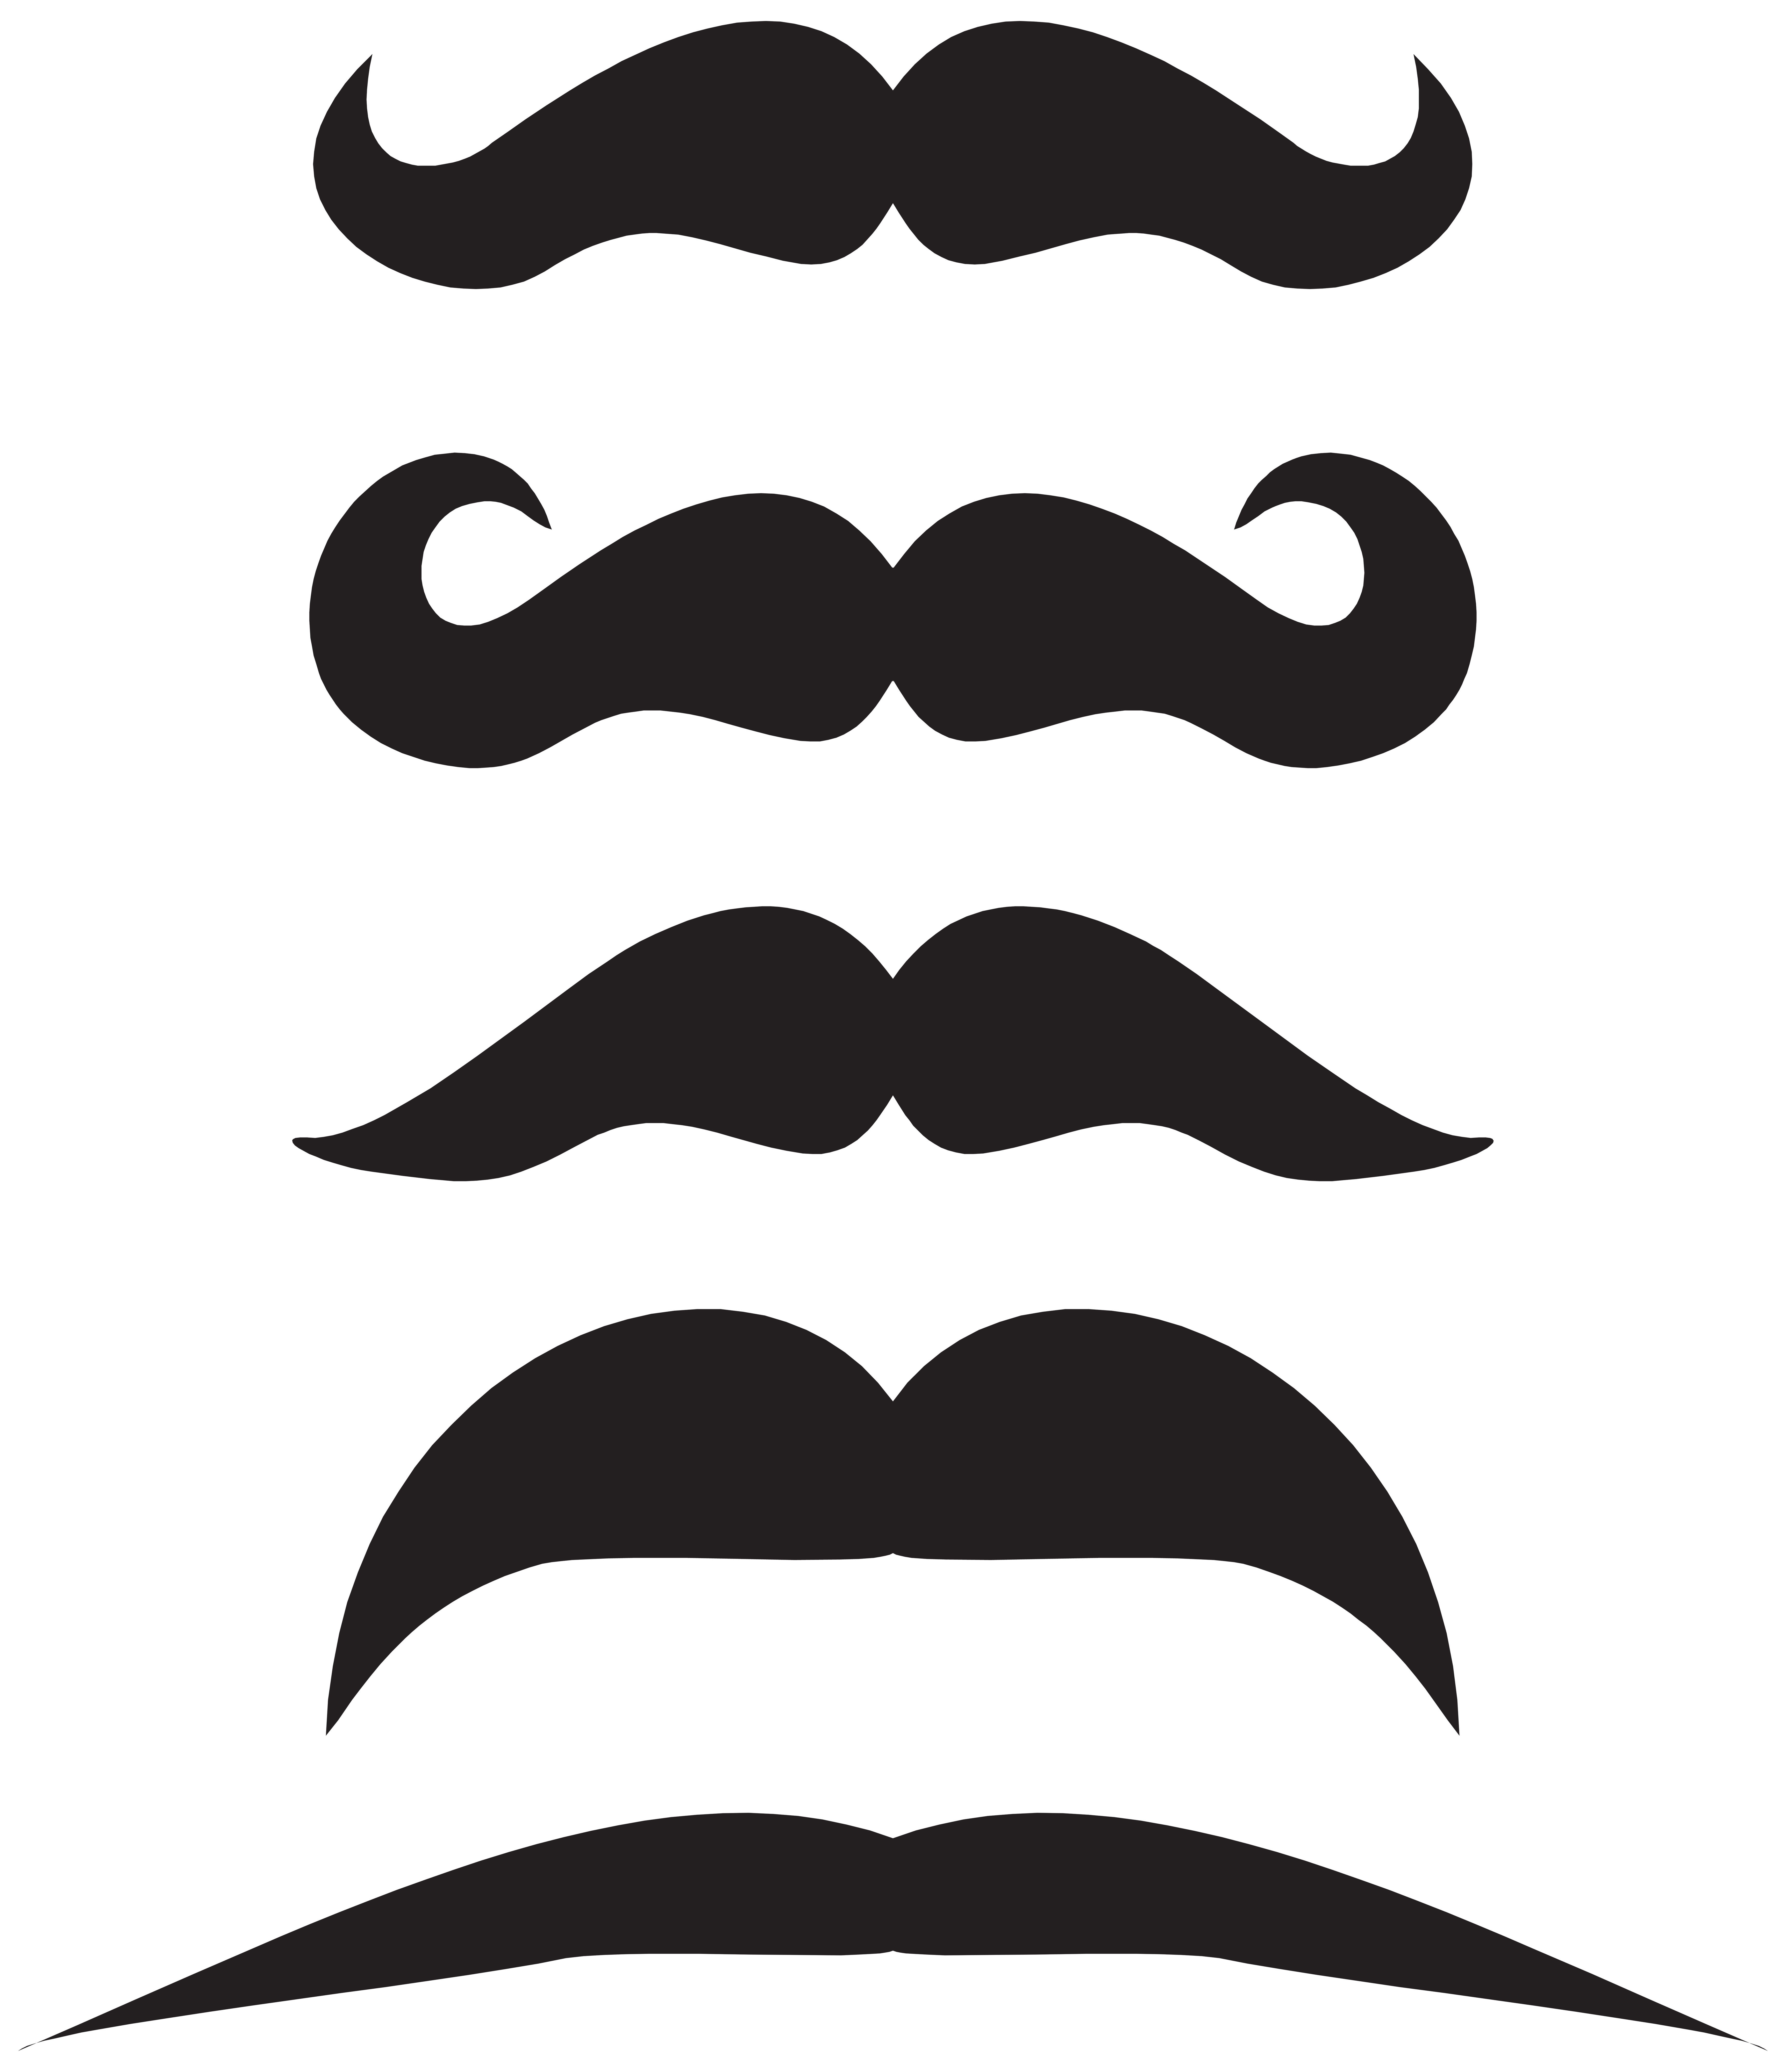 moustache clipart border